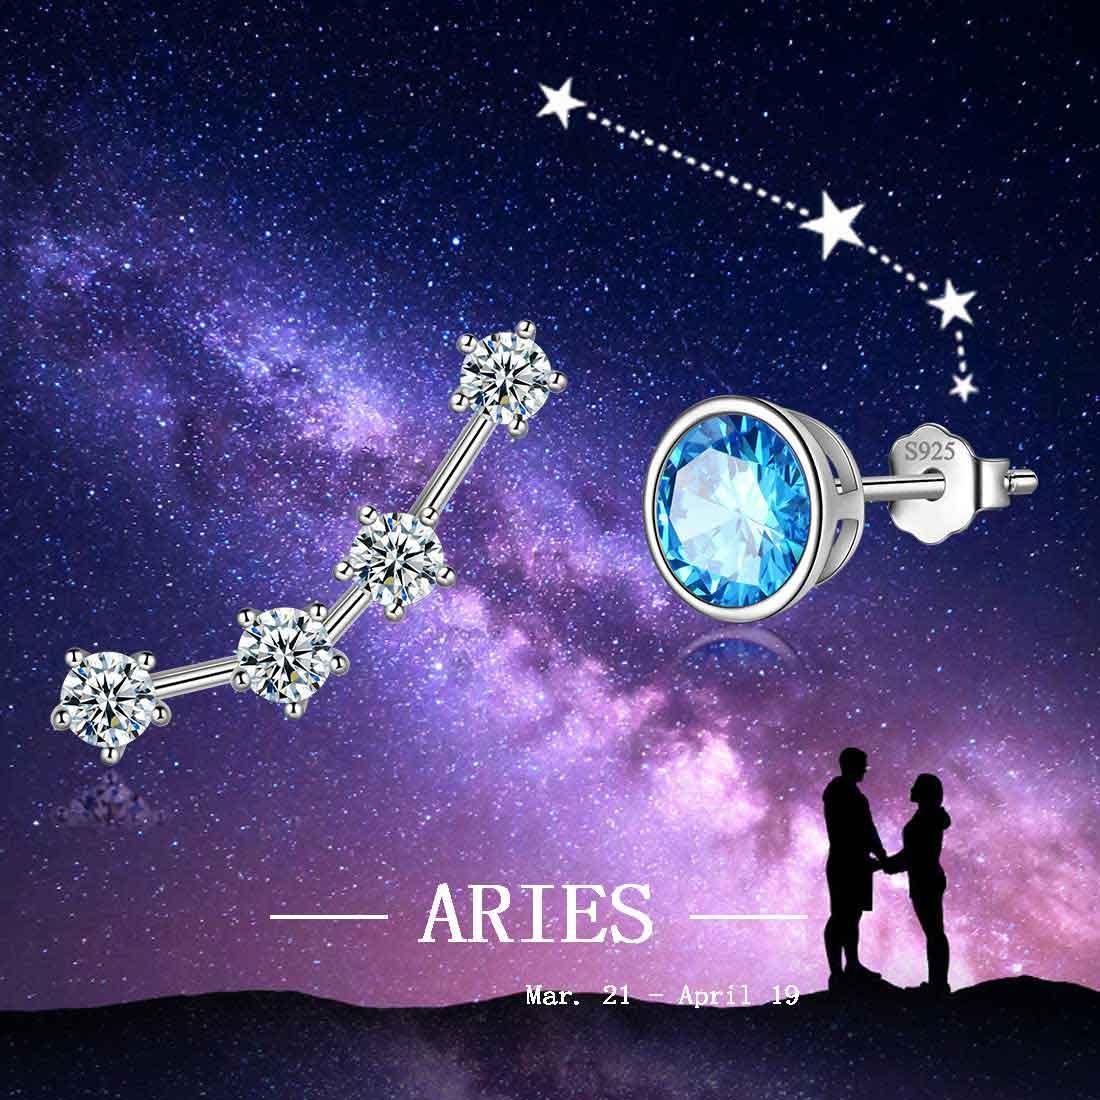 Aries Earrings March Birthstone Zodiac Studs - Earrings - Aurora Tears